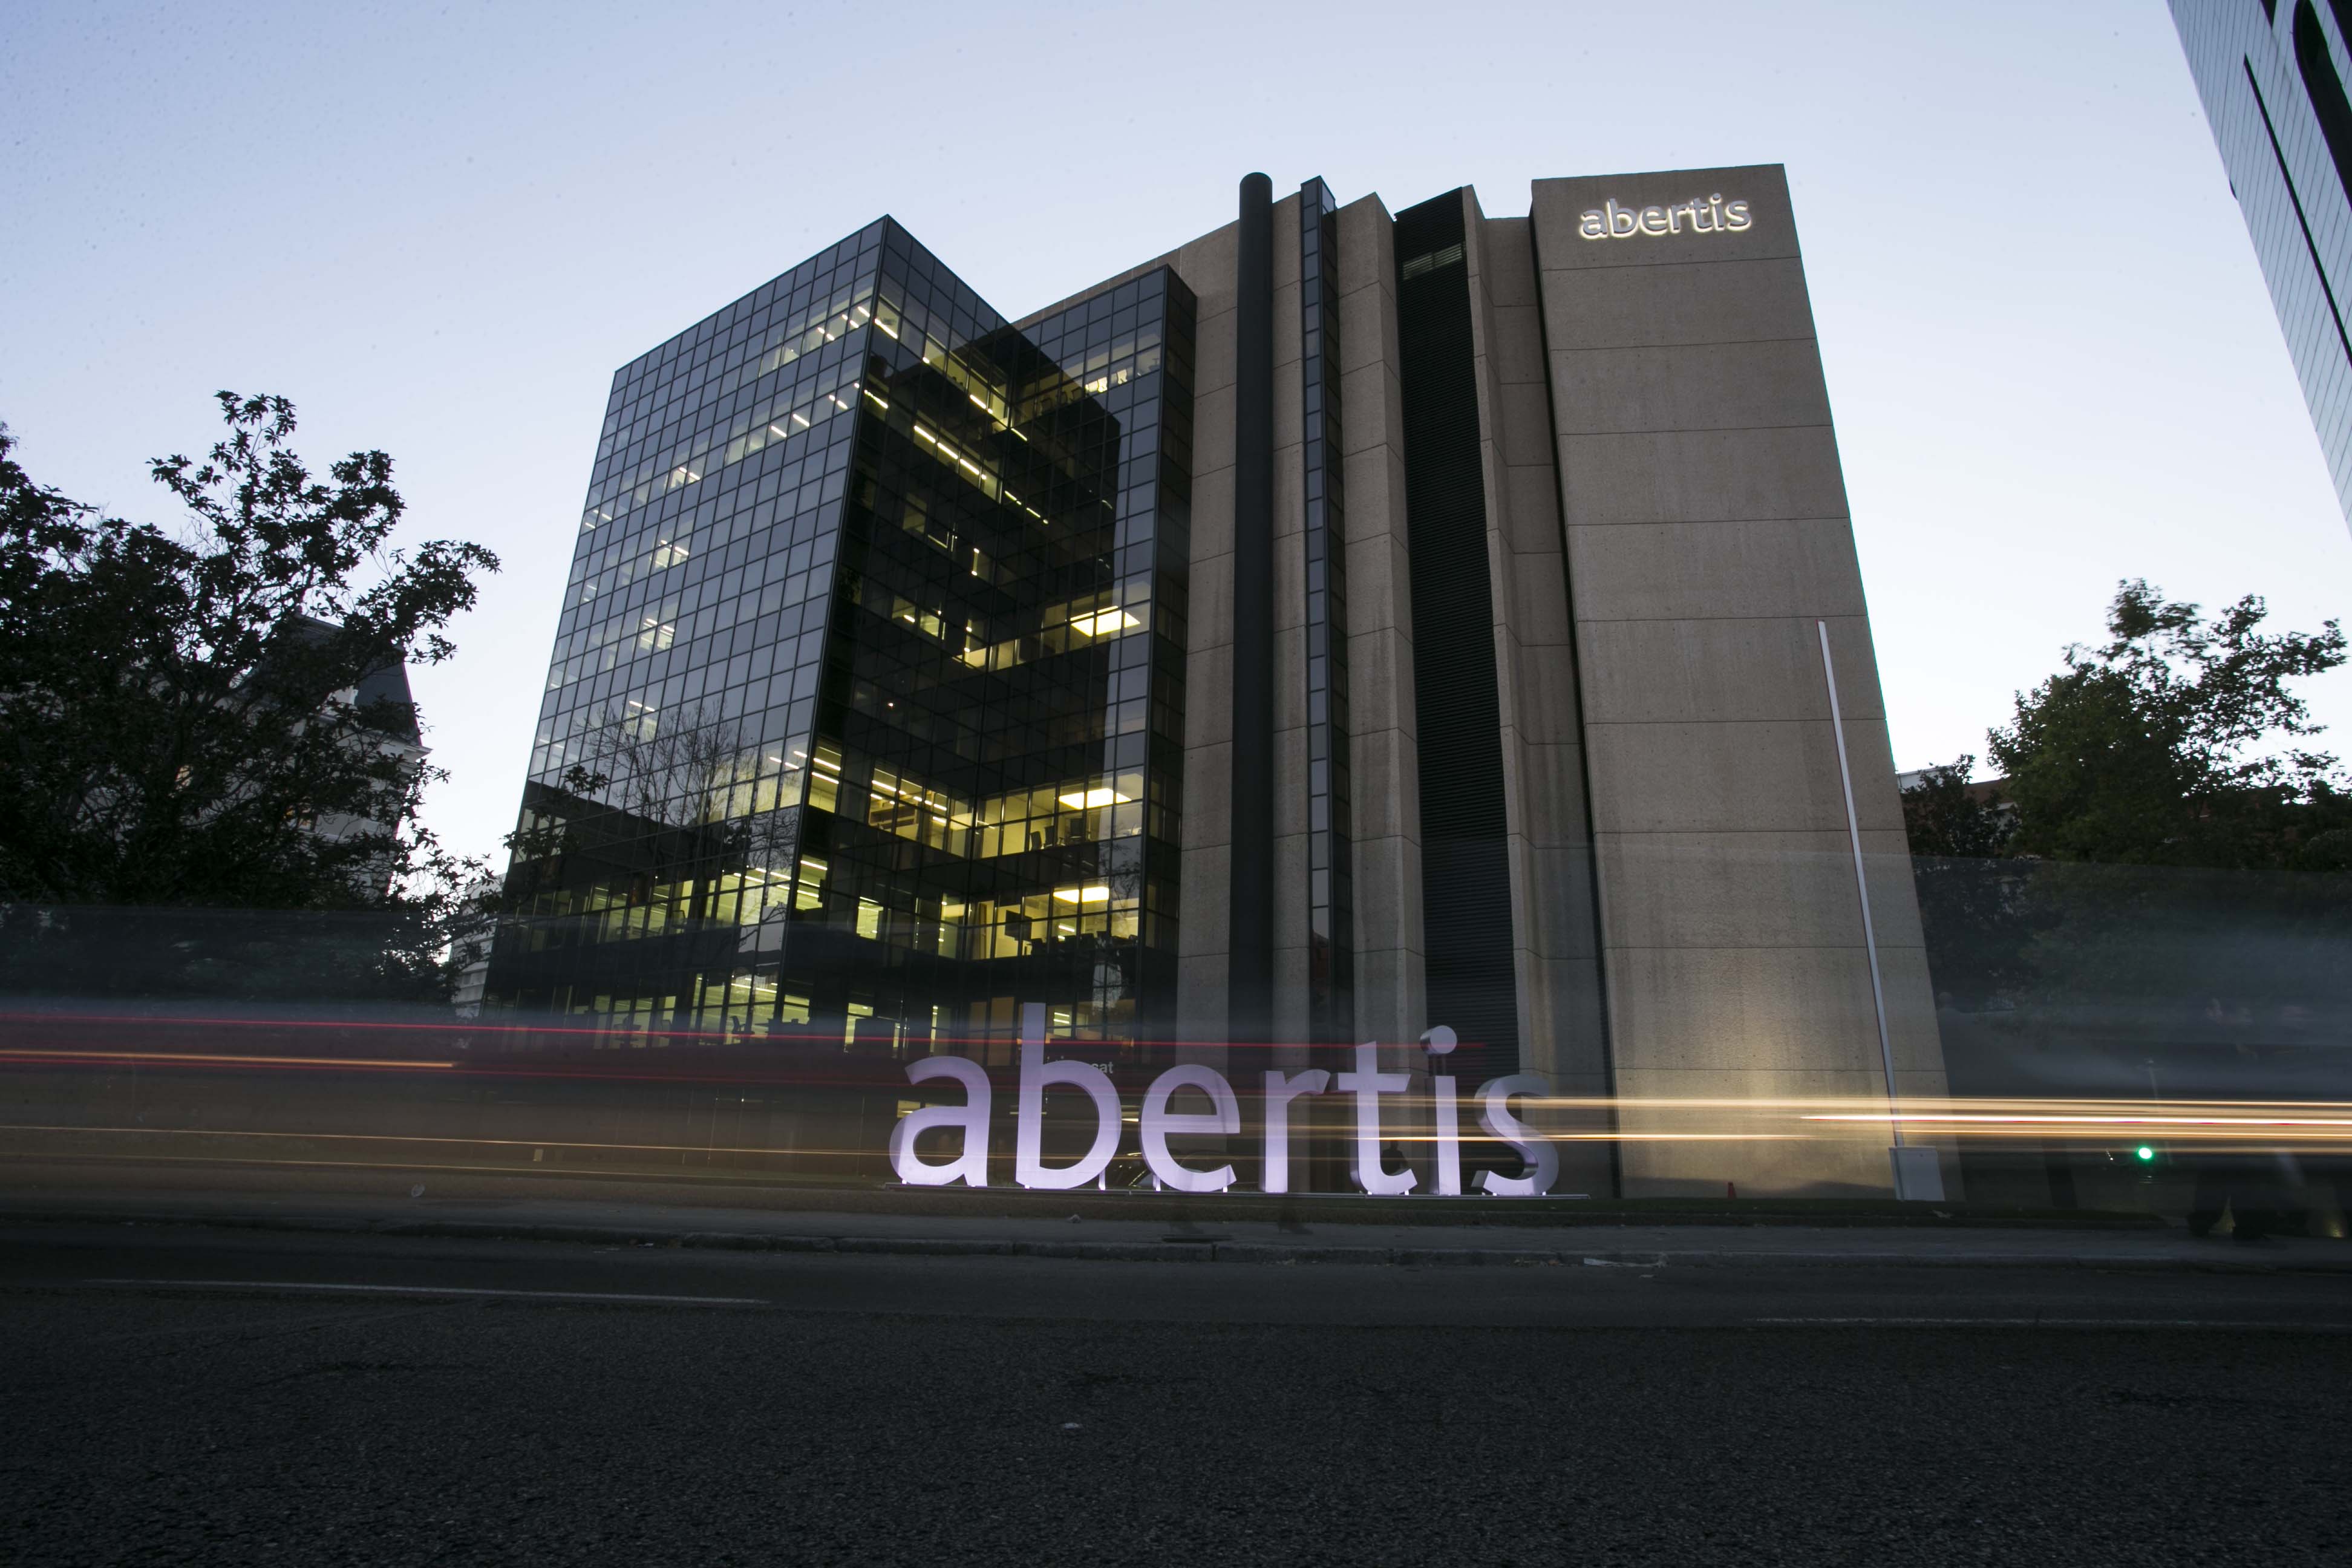 La Comisión Europea aprueba la compra de Abertis por parte de ACS y Atlantia